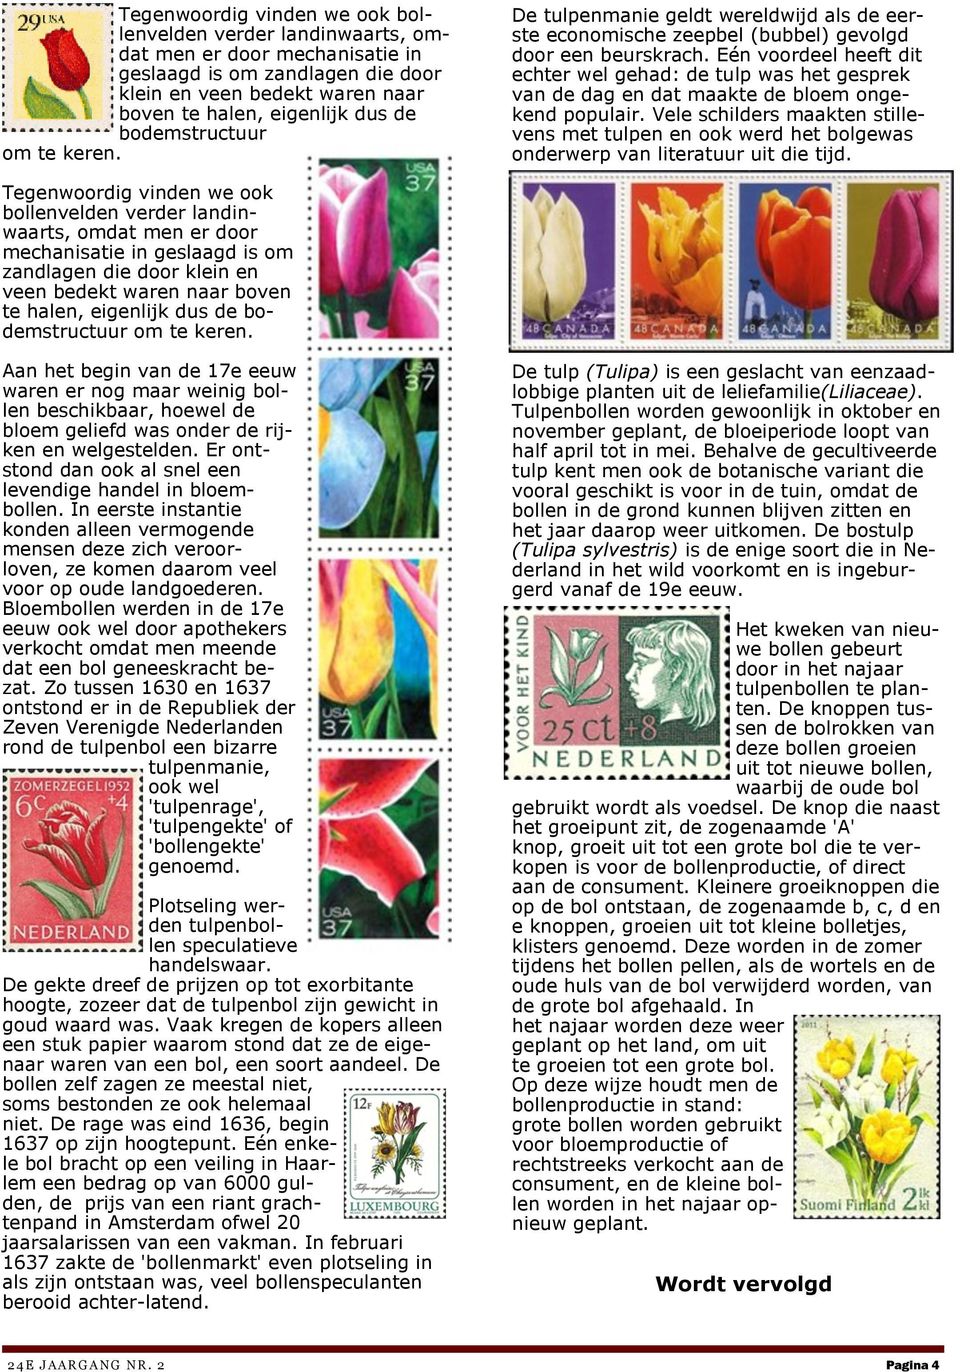 Eén voordeel heeft dit echter wel gehad: de tulp was het gesprek van de dag en dat maakte de bloem ongekend populair.